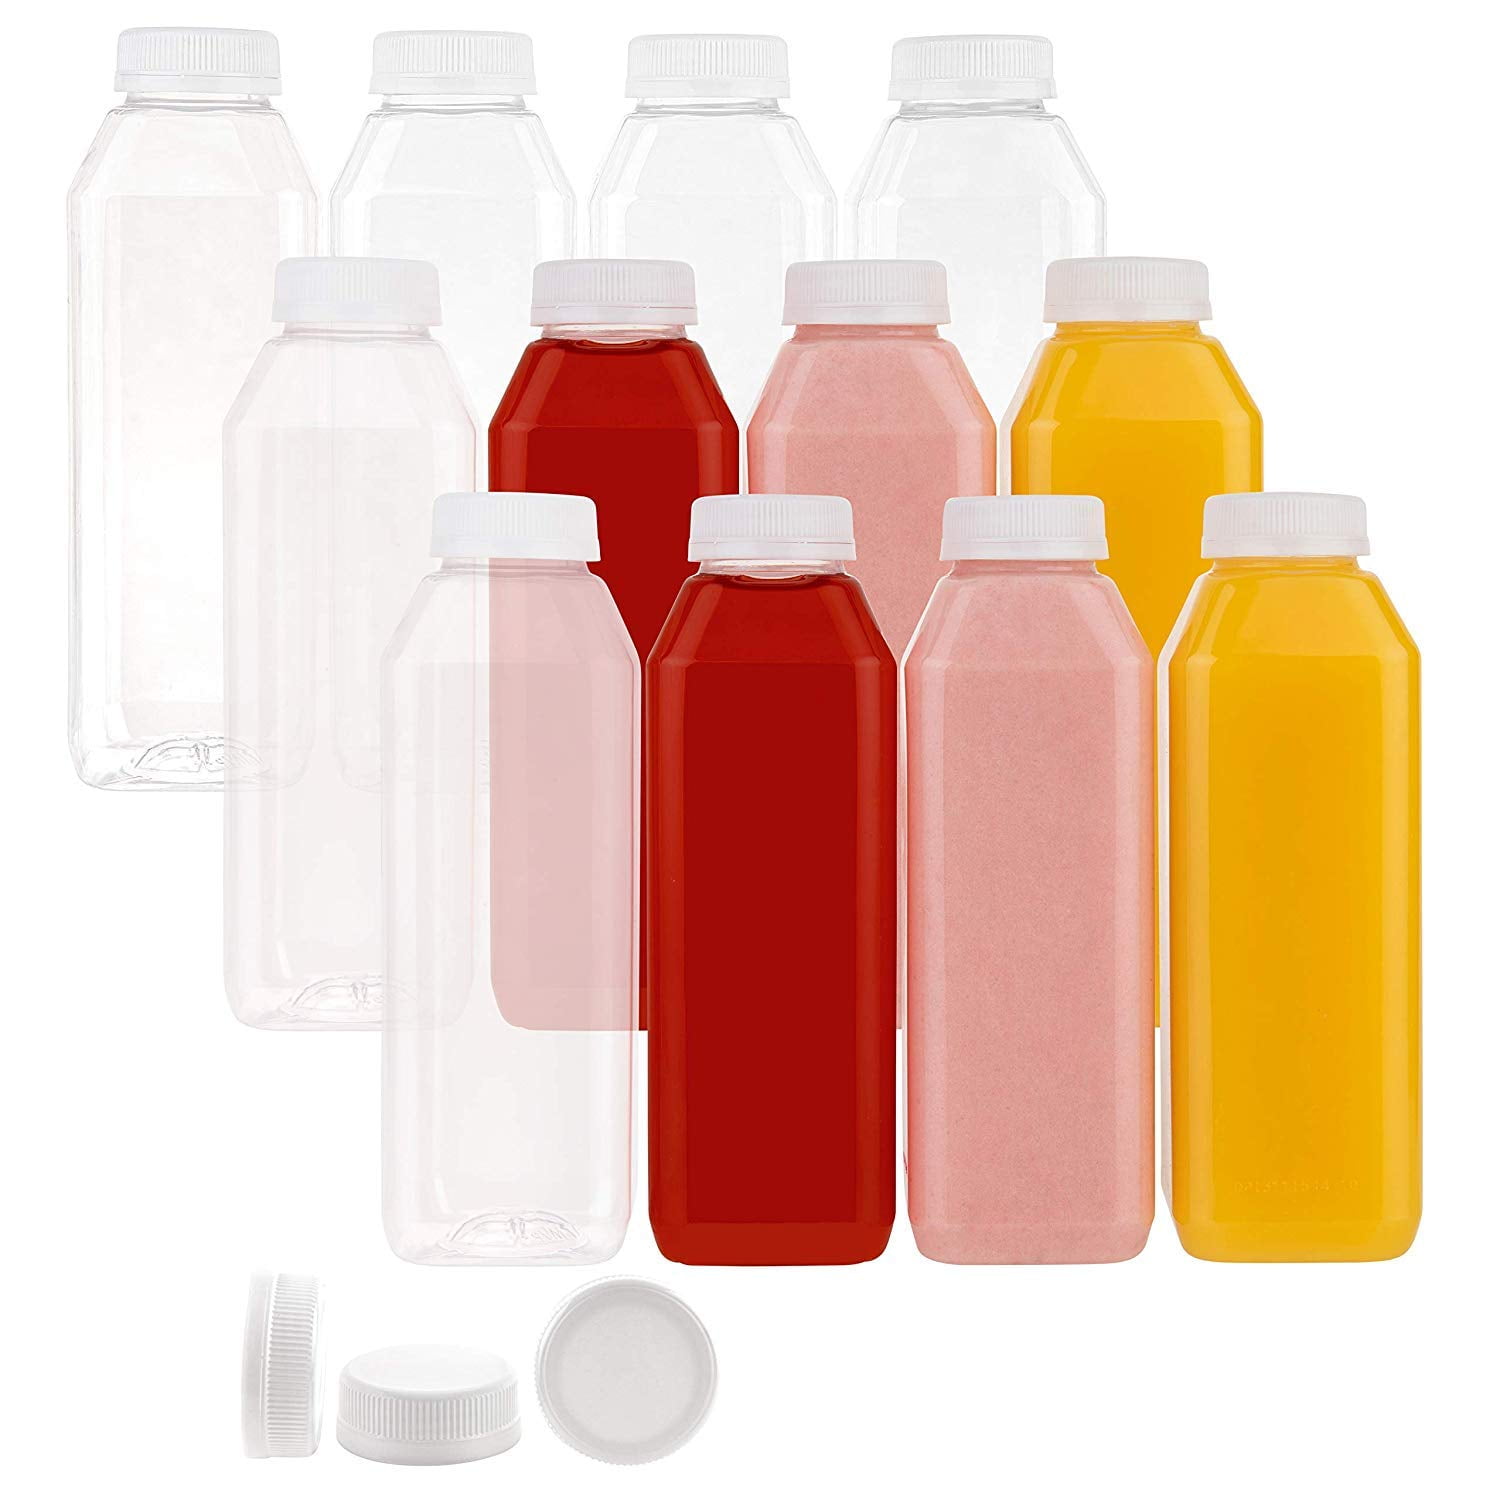 Jersey Bottle Plastic Juice Bottle, PET16WH, Square PET, 16 oz., 160/Case